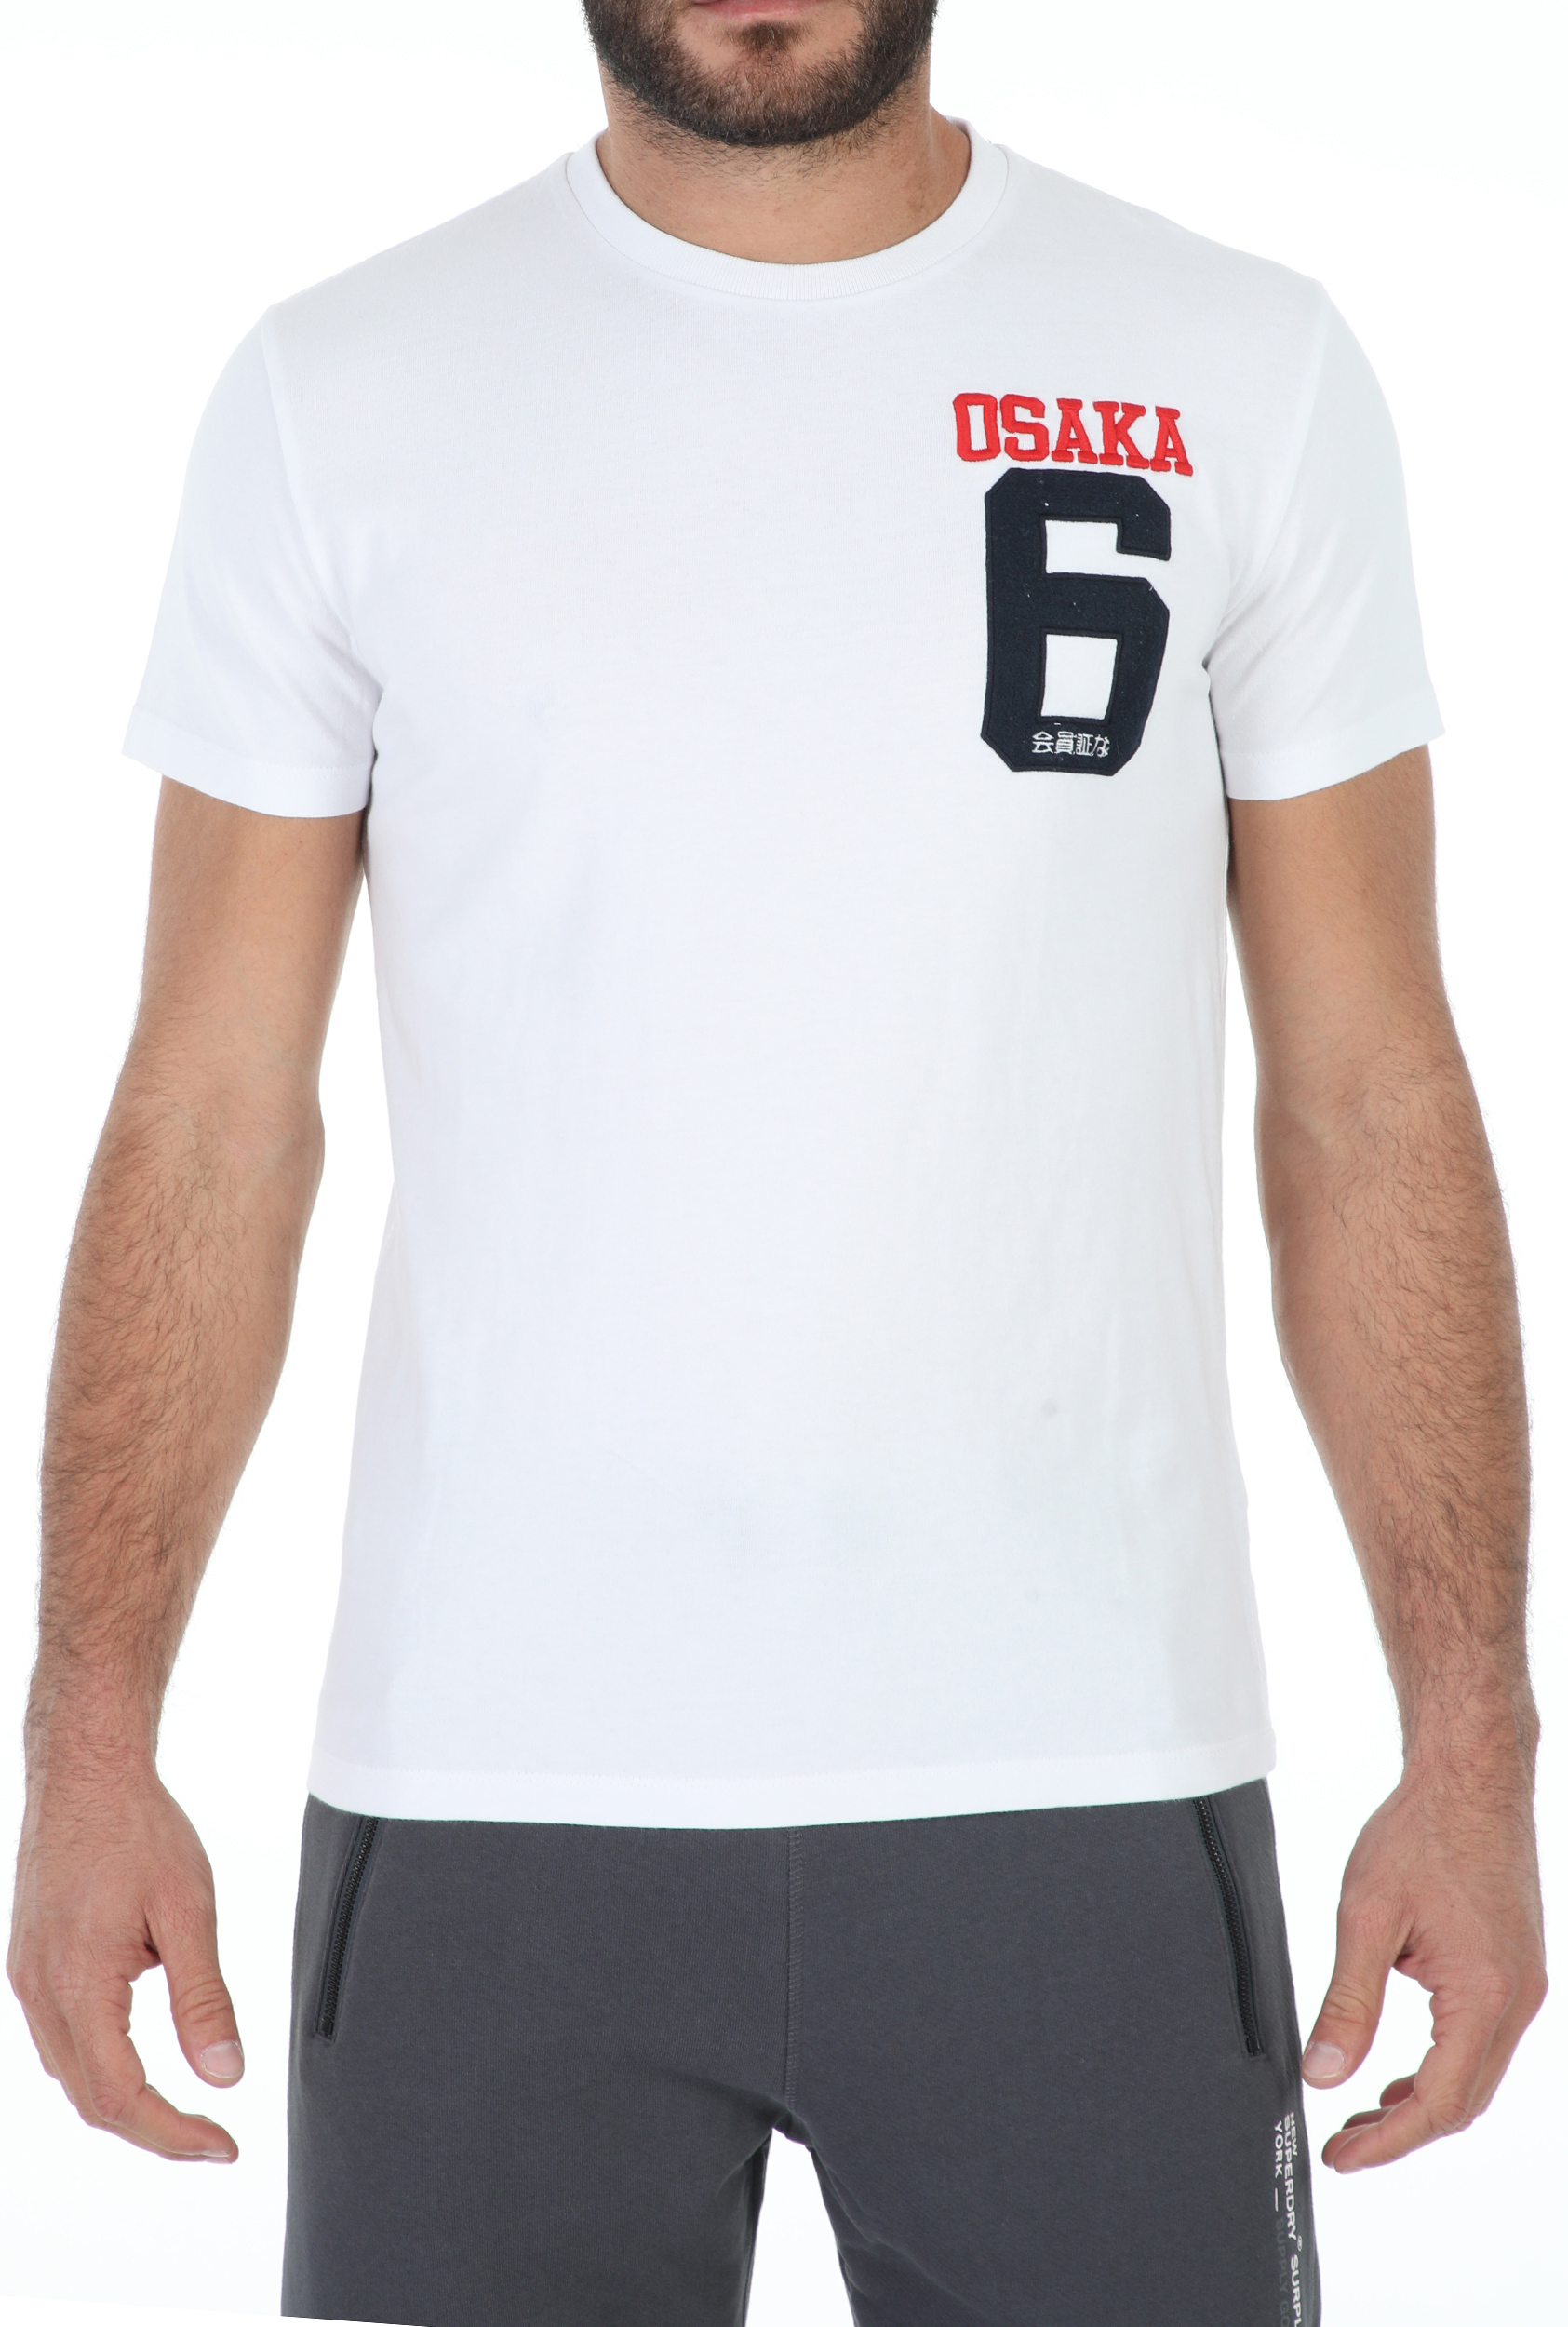 Ανδρικά/Ρούχα/Μπλούζες/Κοντομάνικες SUPERDRY - Ανδρική μπλούζα SUPERDRY OSAKA λευκή